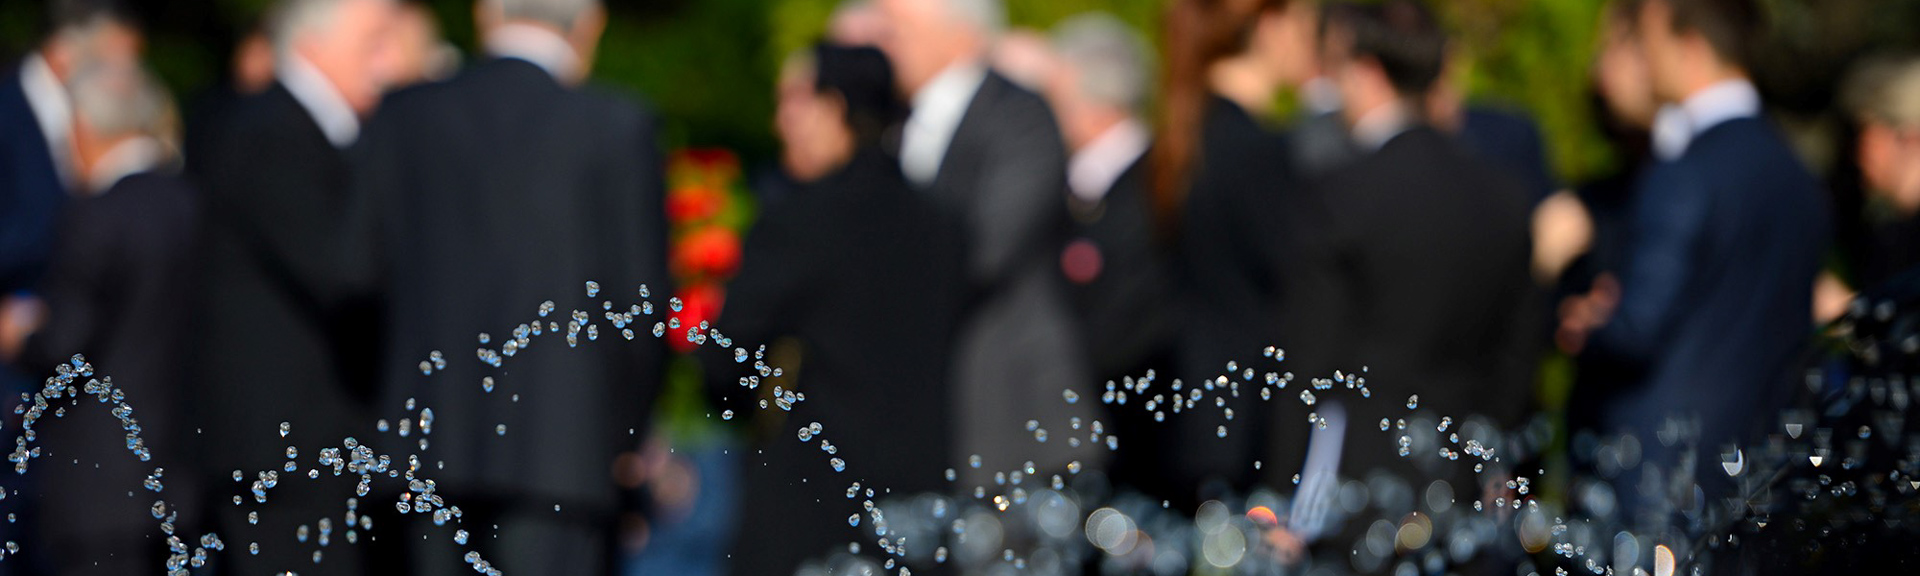 Vid dödsfall - Information för gäster vid begravning - Lund med omnejd - auktoriserade-begravningsbyraer-25